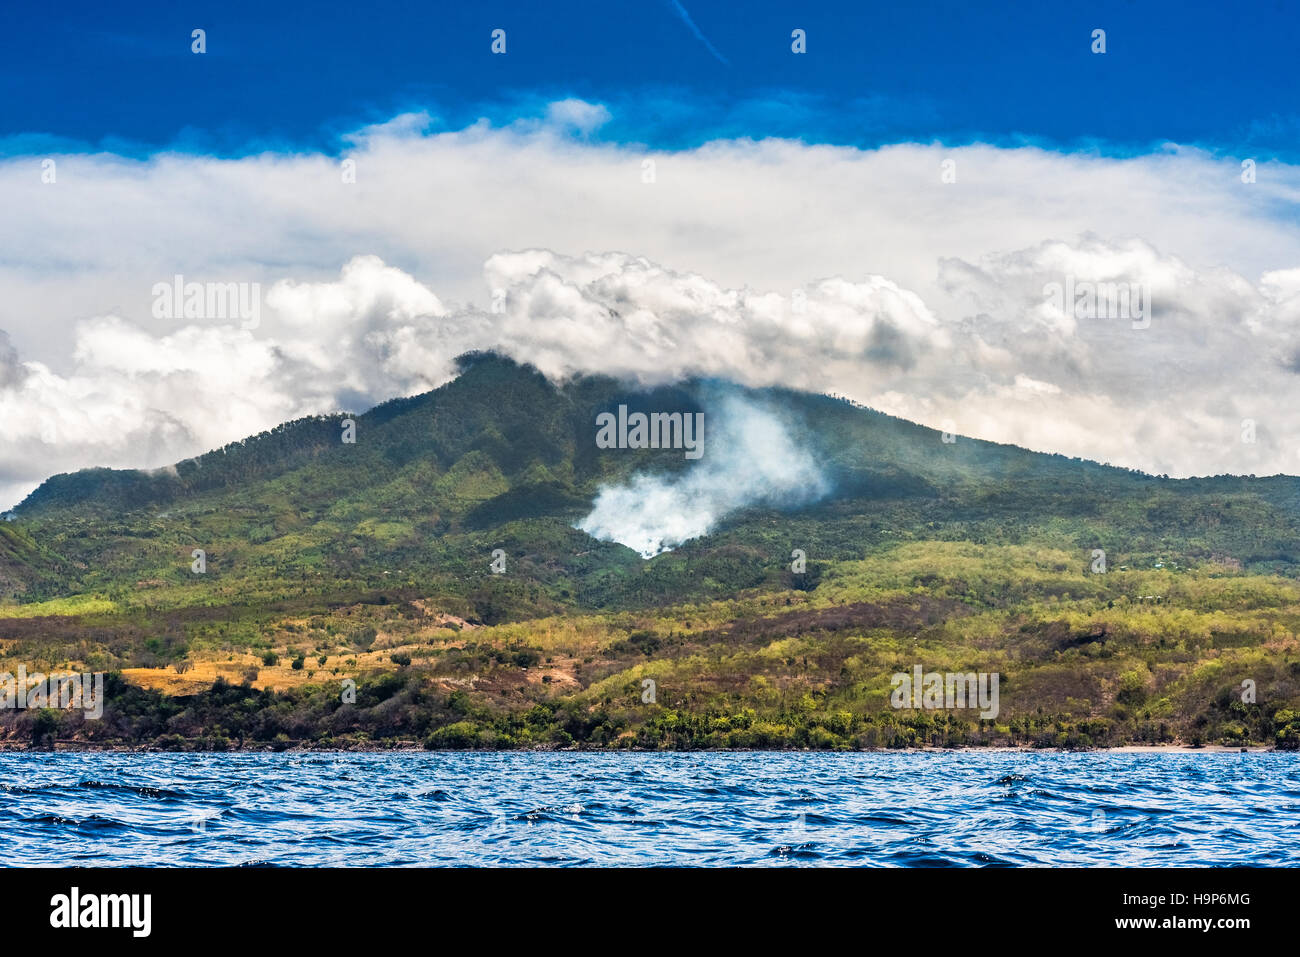 La fumée des feux de forêt sur la pente du mont Ili Labalekang est vue depuis l'eau de mer au large de la côte de Wulandoni, Lembata, Nusa Tenggara est, Indonésie. Banque D'Images